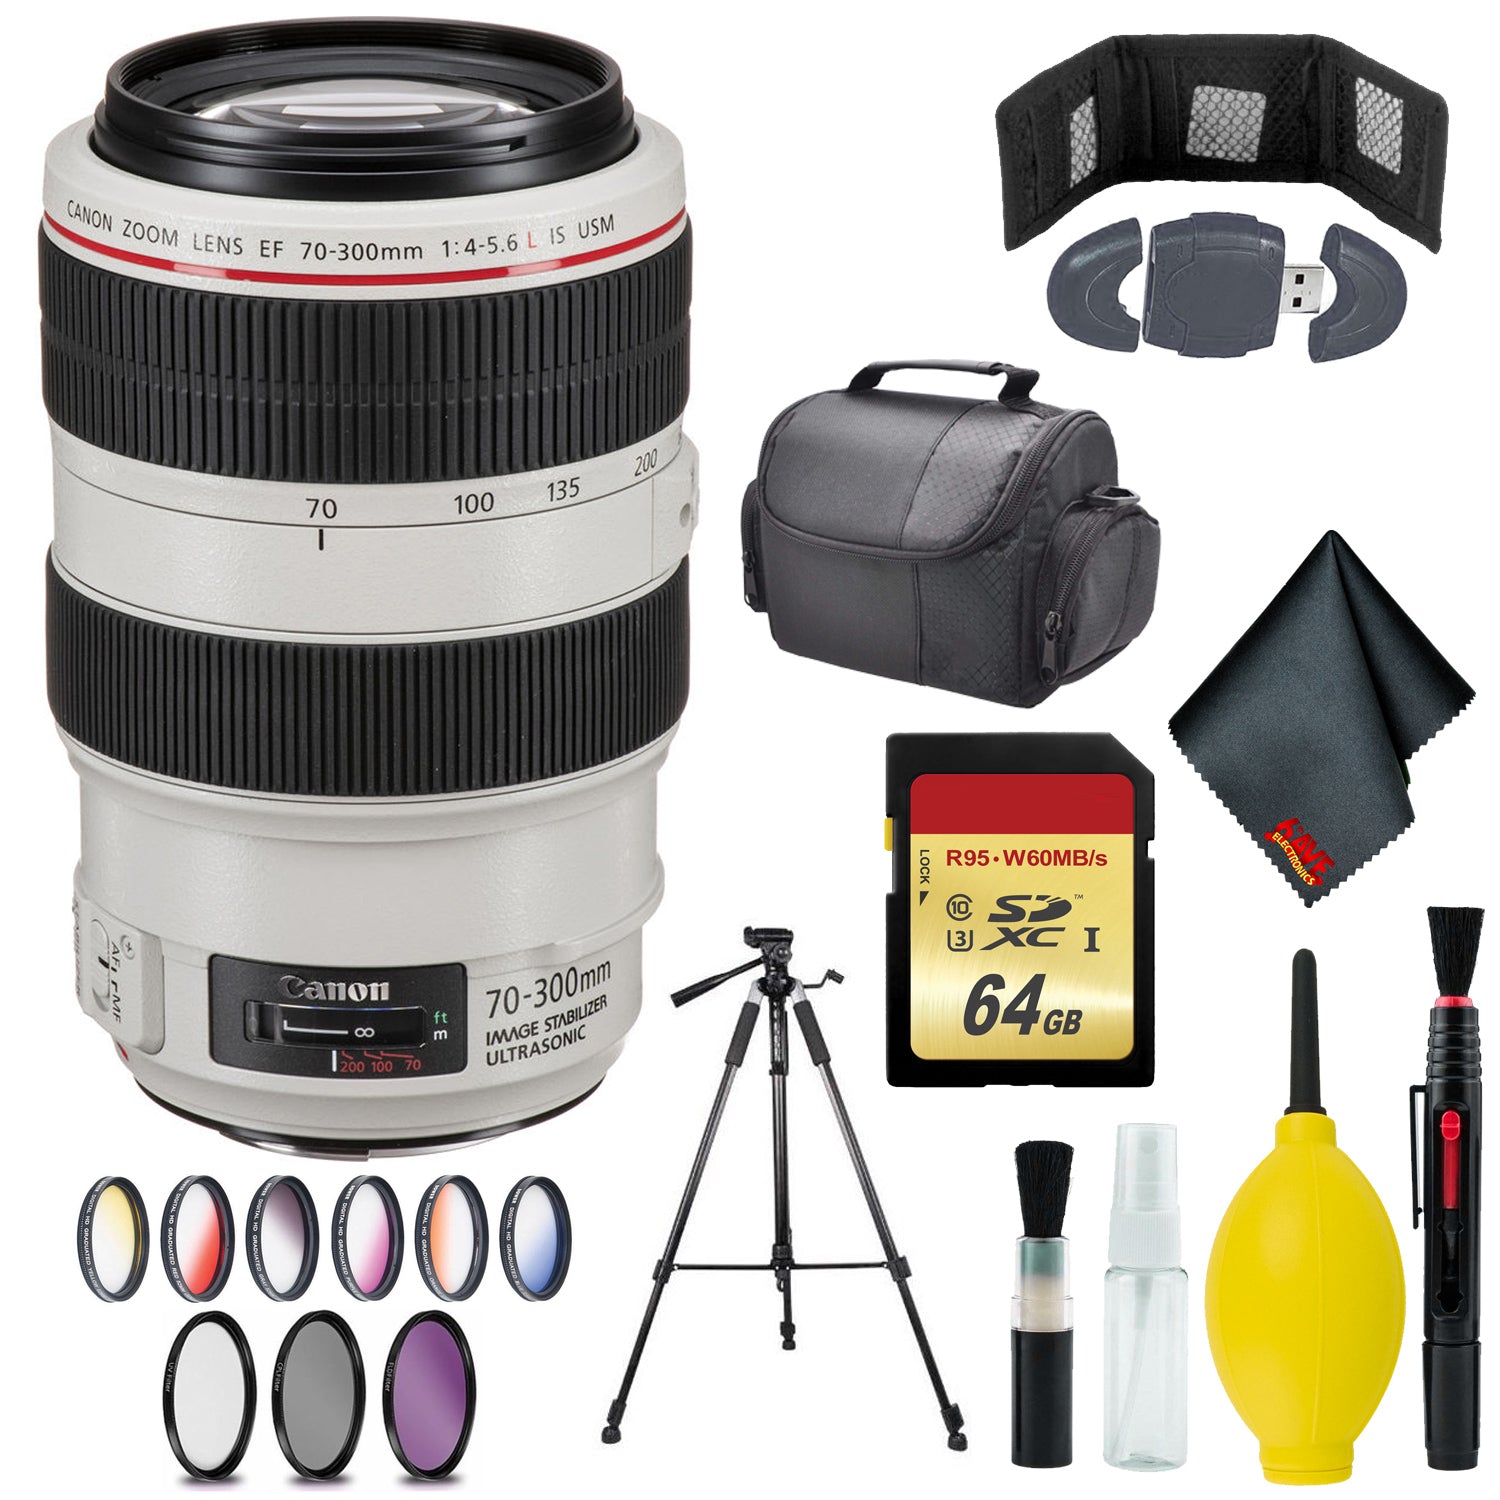 Canon EF 70-300mm f/4-5.6L IS USM Lens - Memory Card Wallet & Reader - 128GB - CASE - 67mm 3 Piece Filter Kit